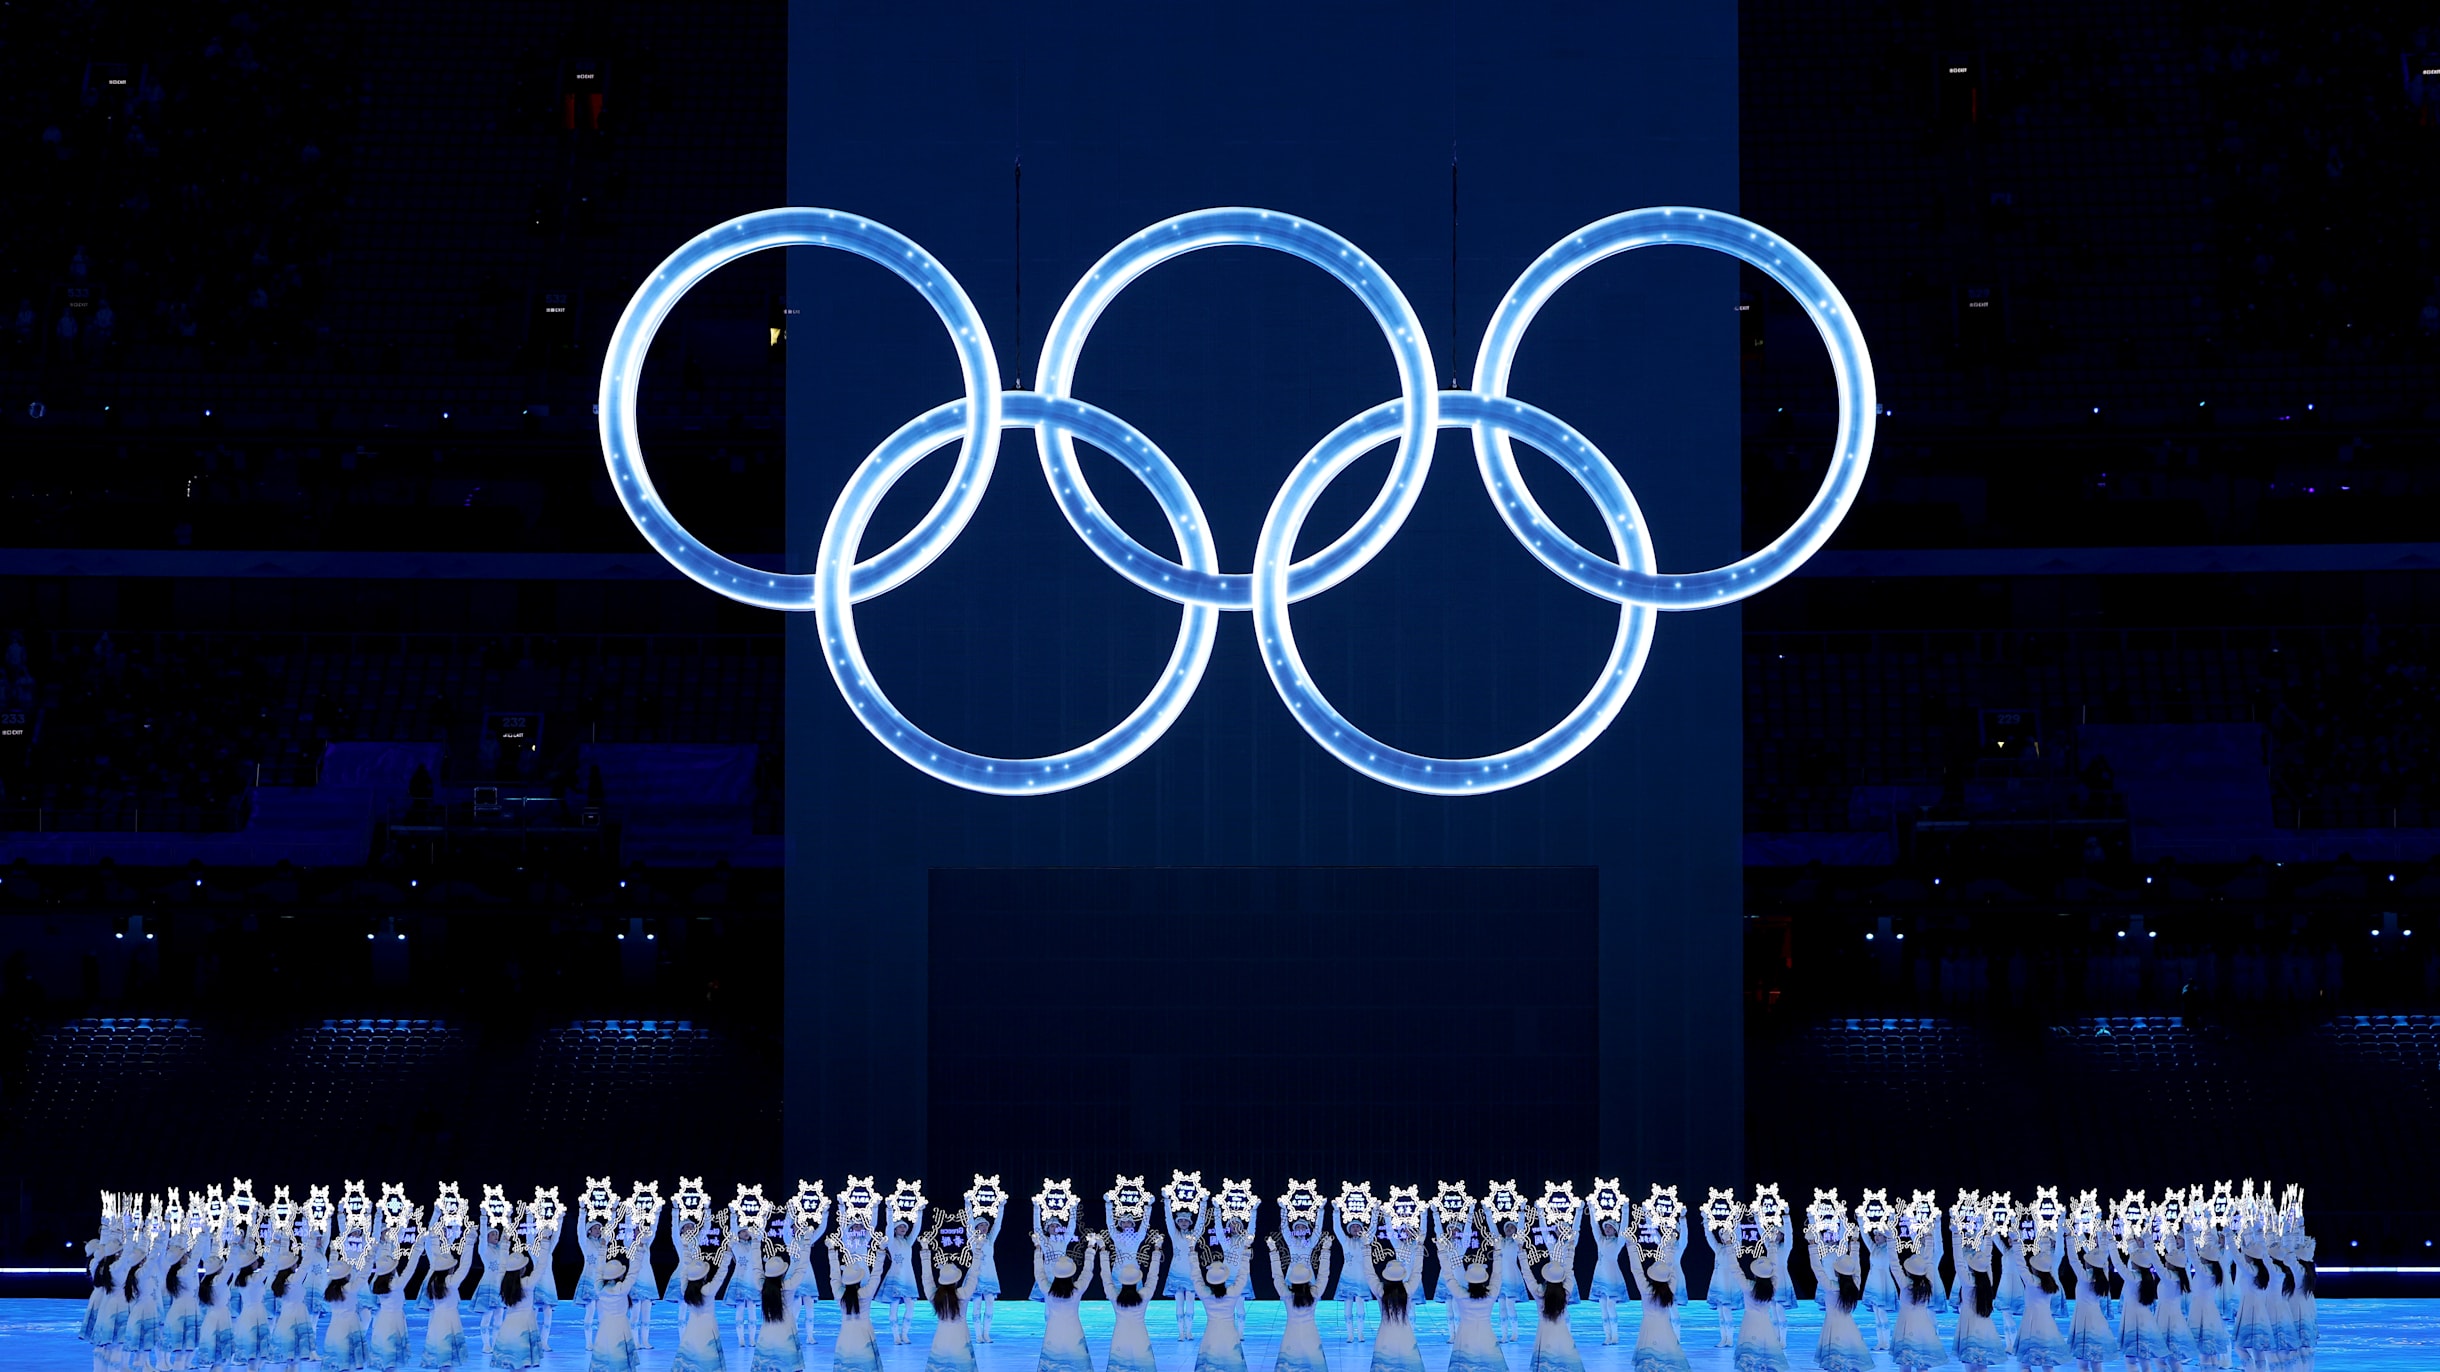 Winter Olympics opening ceremony recap: Dazzling start to in Beijing